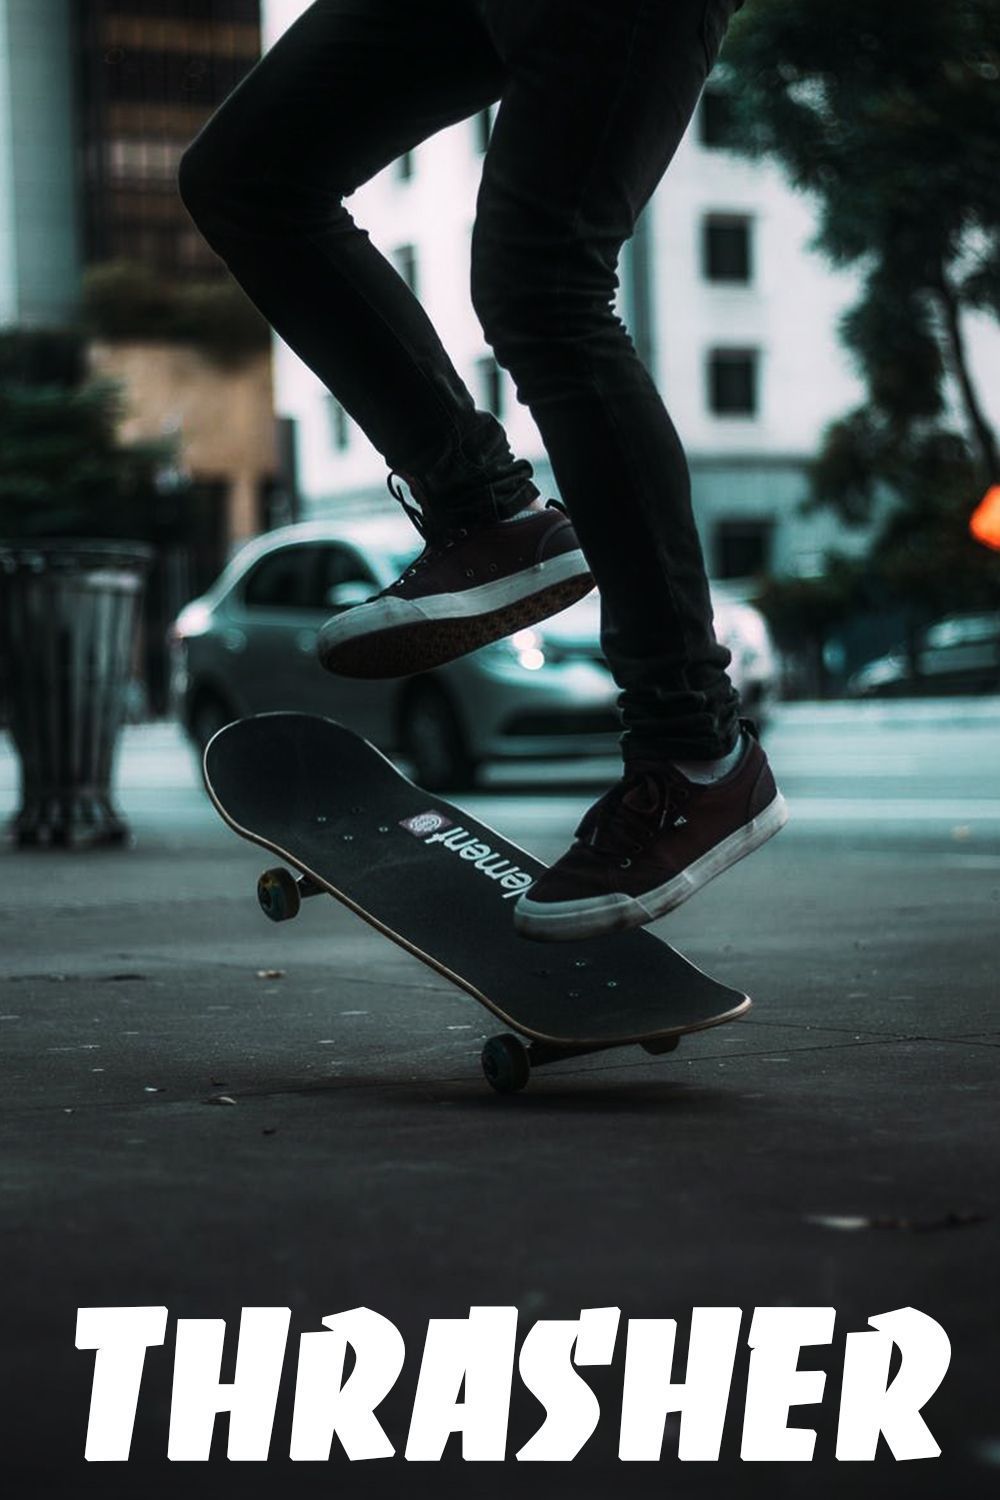 A man is doing tricks on his skateboard - Skate, skater